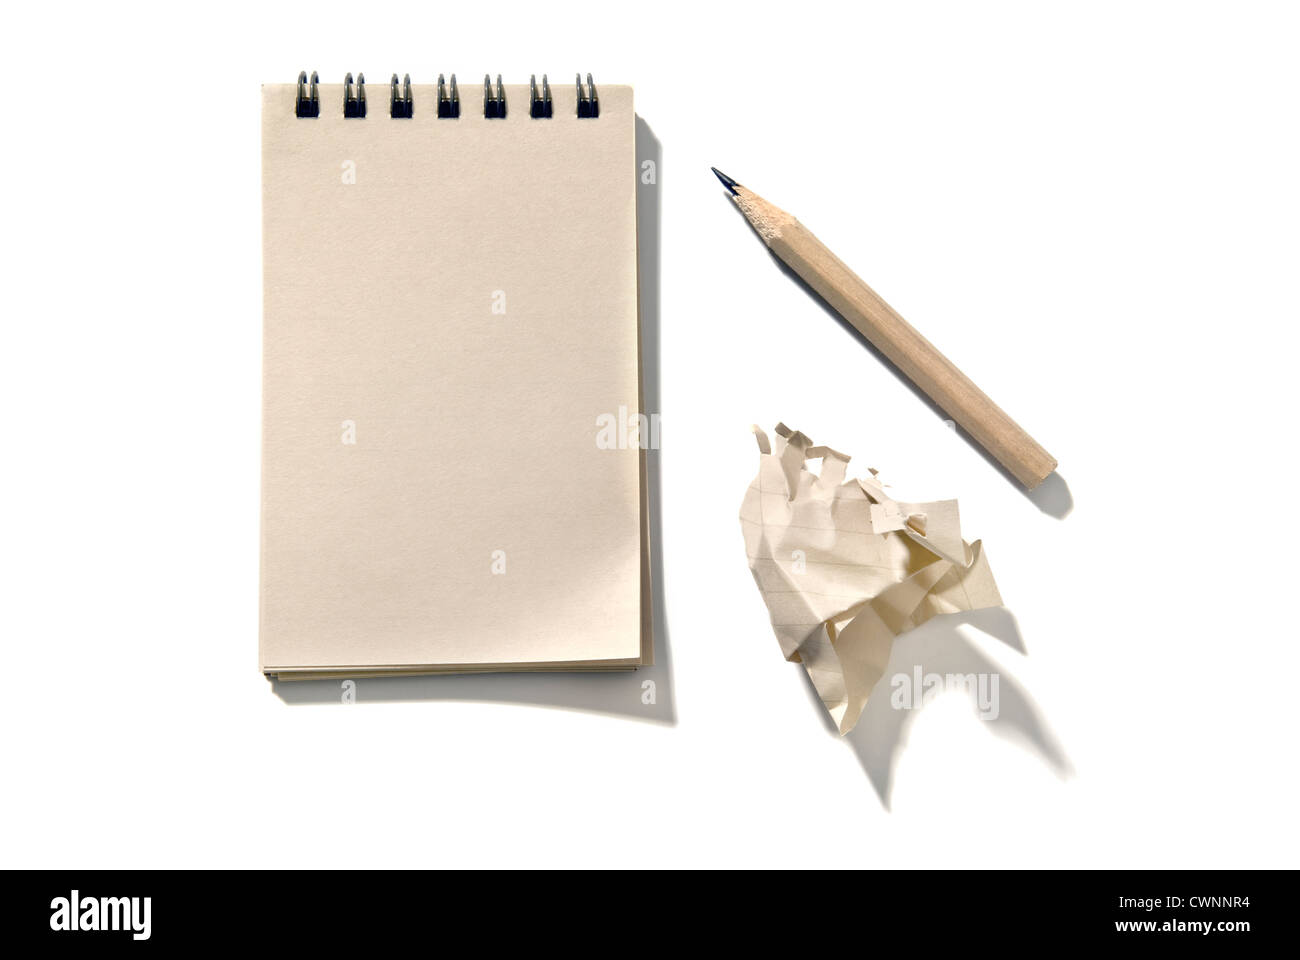 El bloc de notas con un lápiz y un pedazo de papel arrugado, aislado sobre fondo blanco 100% Foto de stock